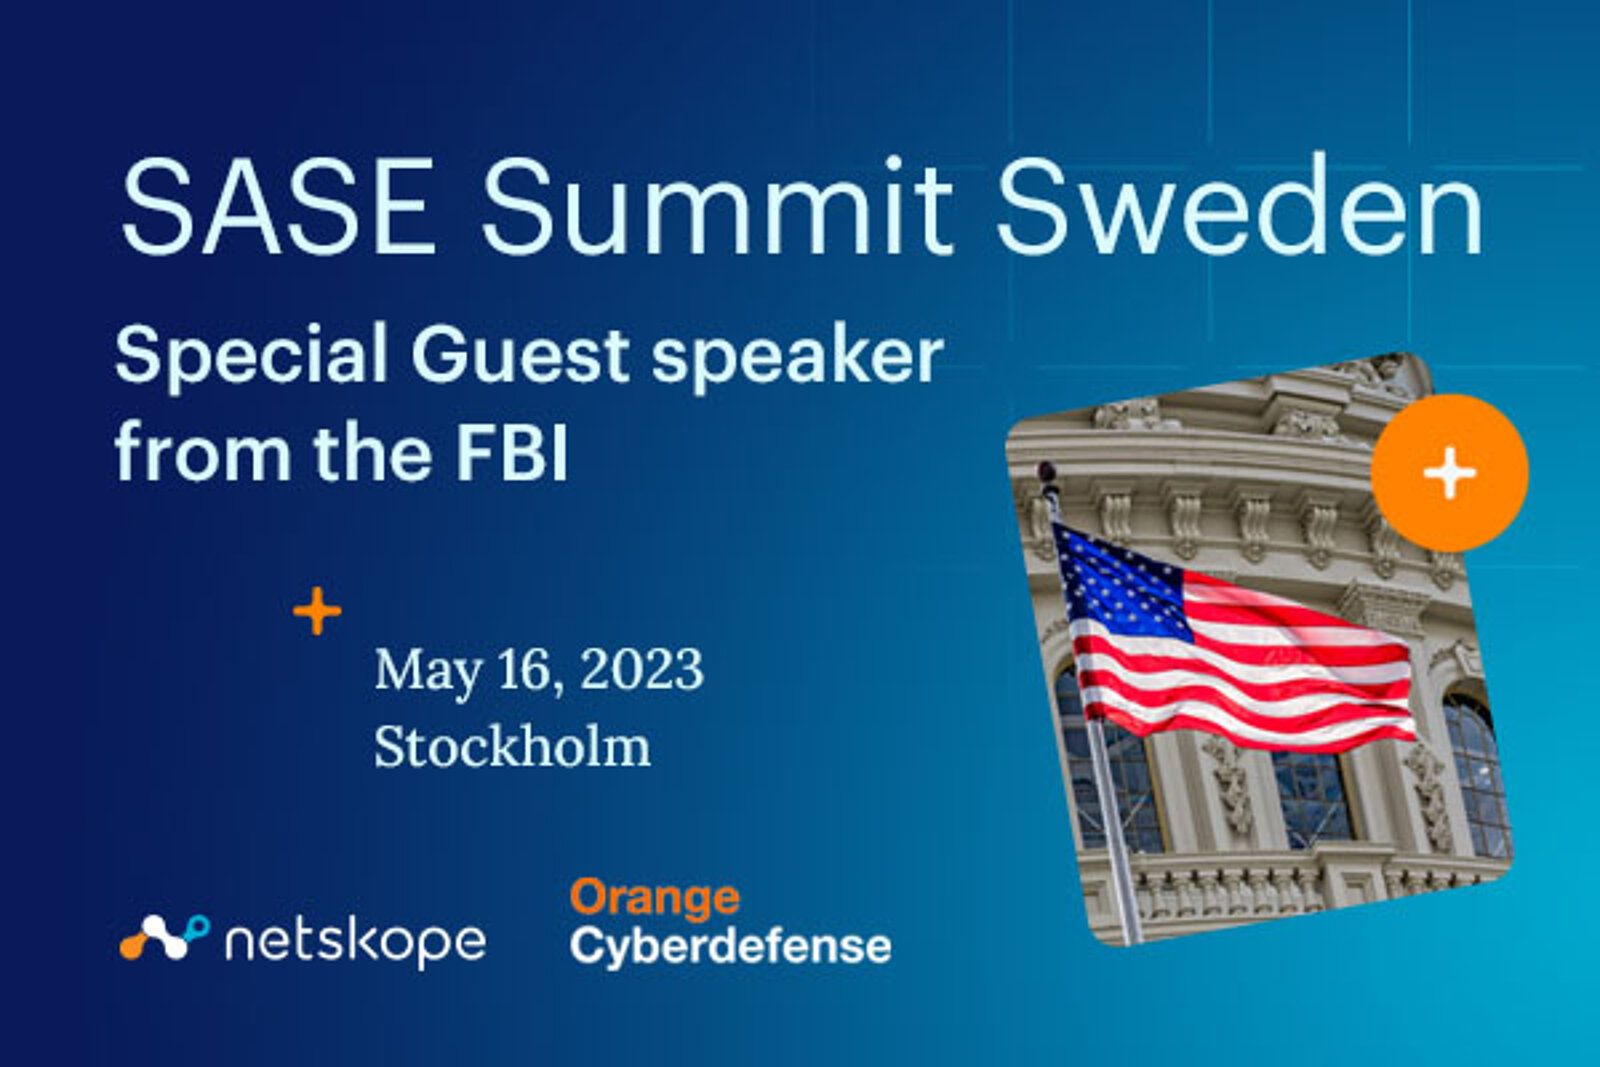 Sase Summit Sweden